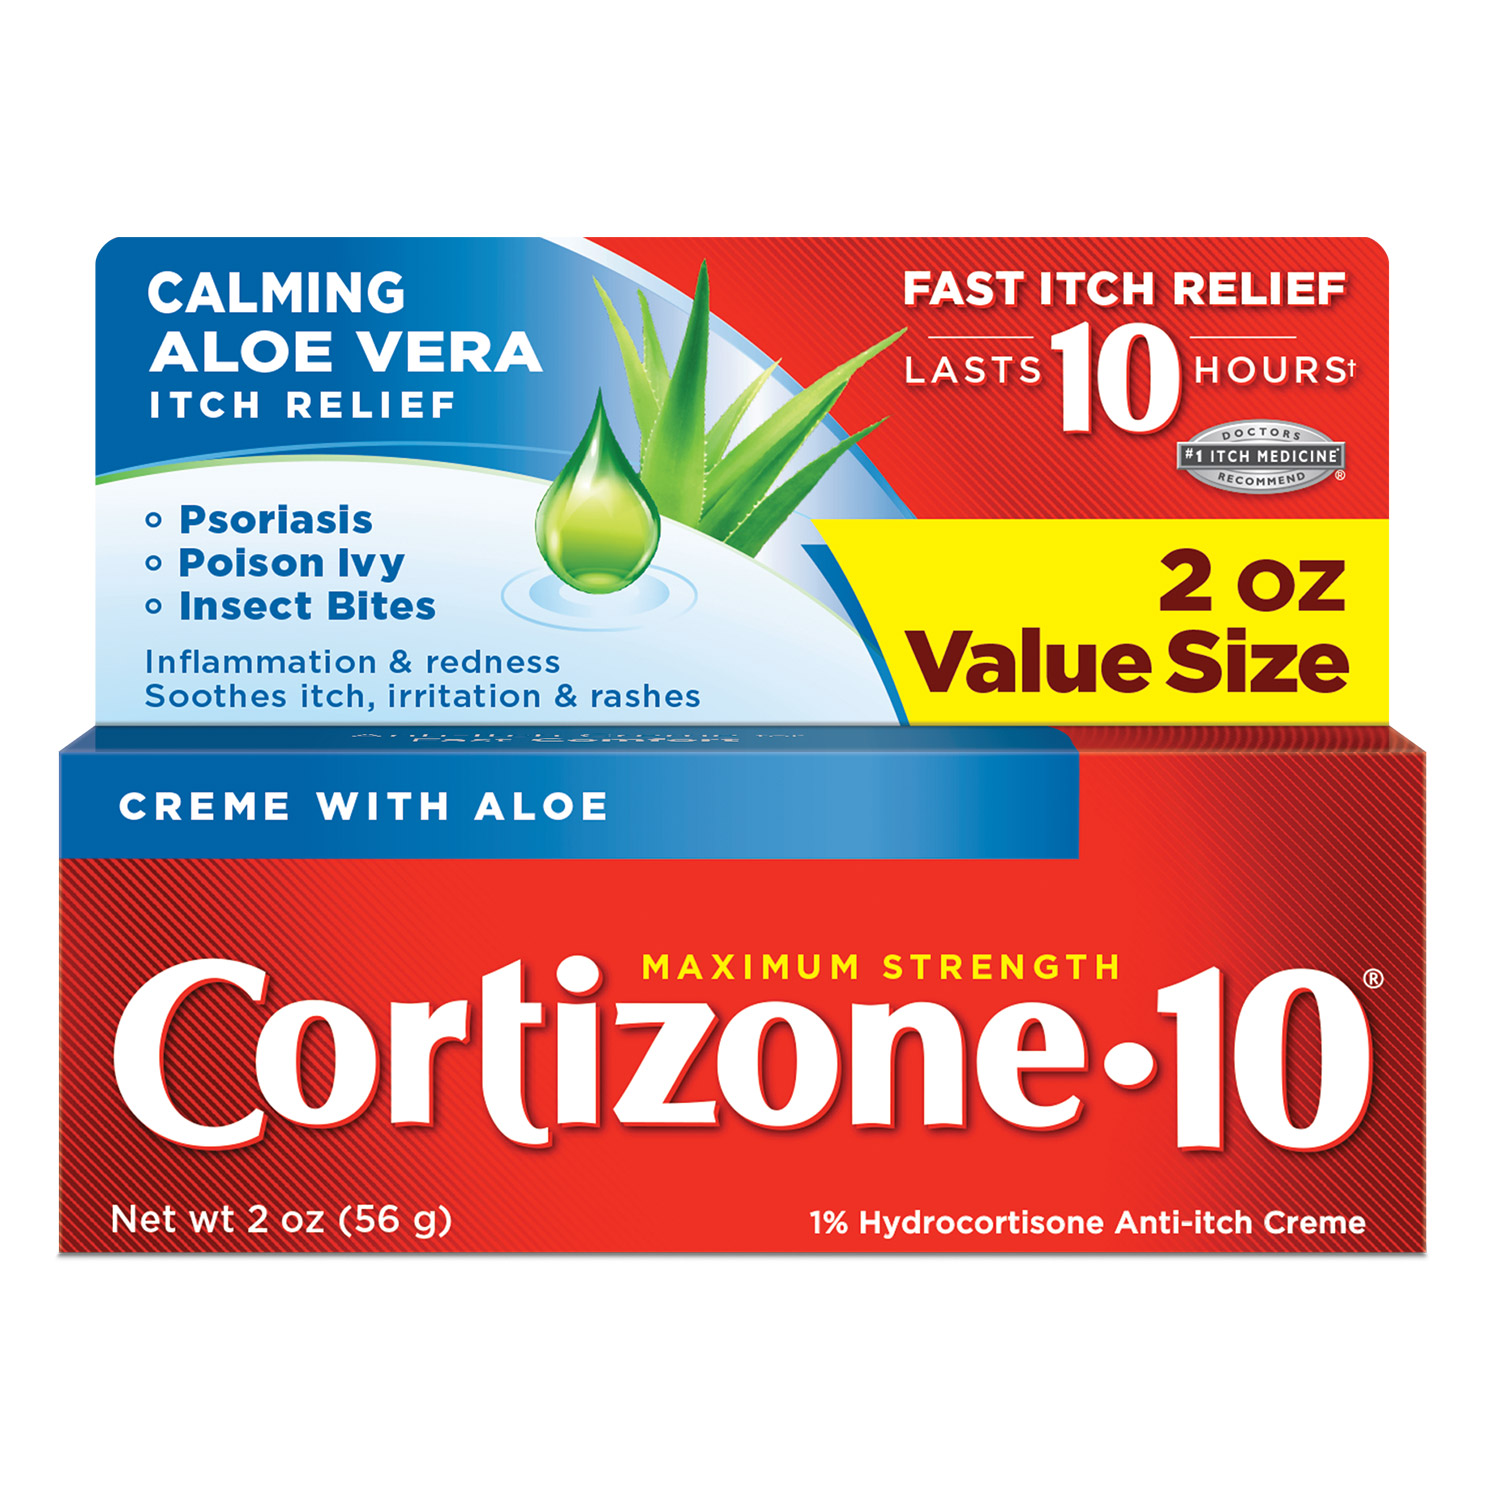 Cortizone 10 Maximum Strength Anti Itch Creme